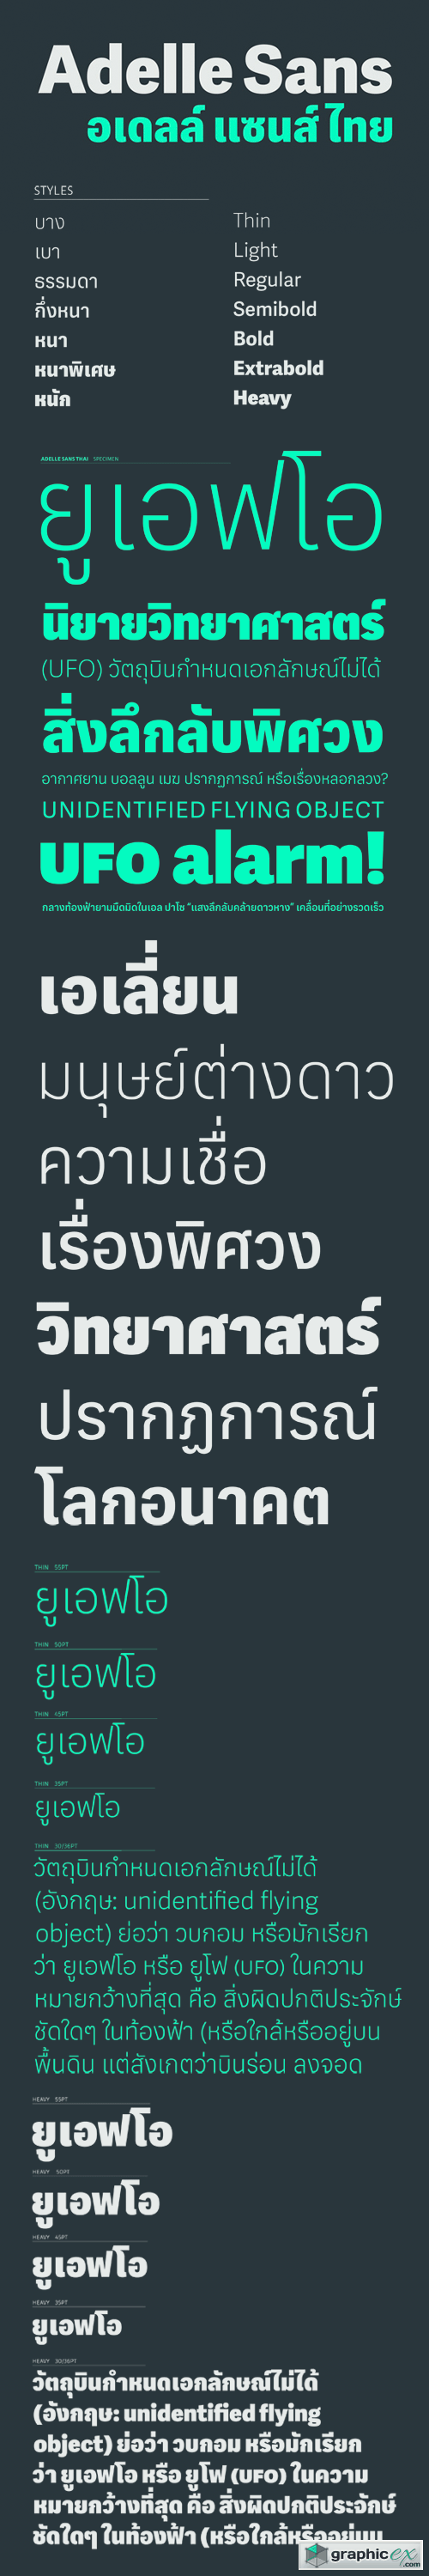 Adelle Sans Thai Font Family